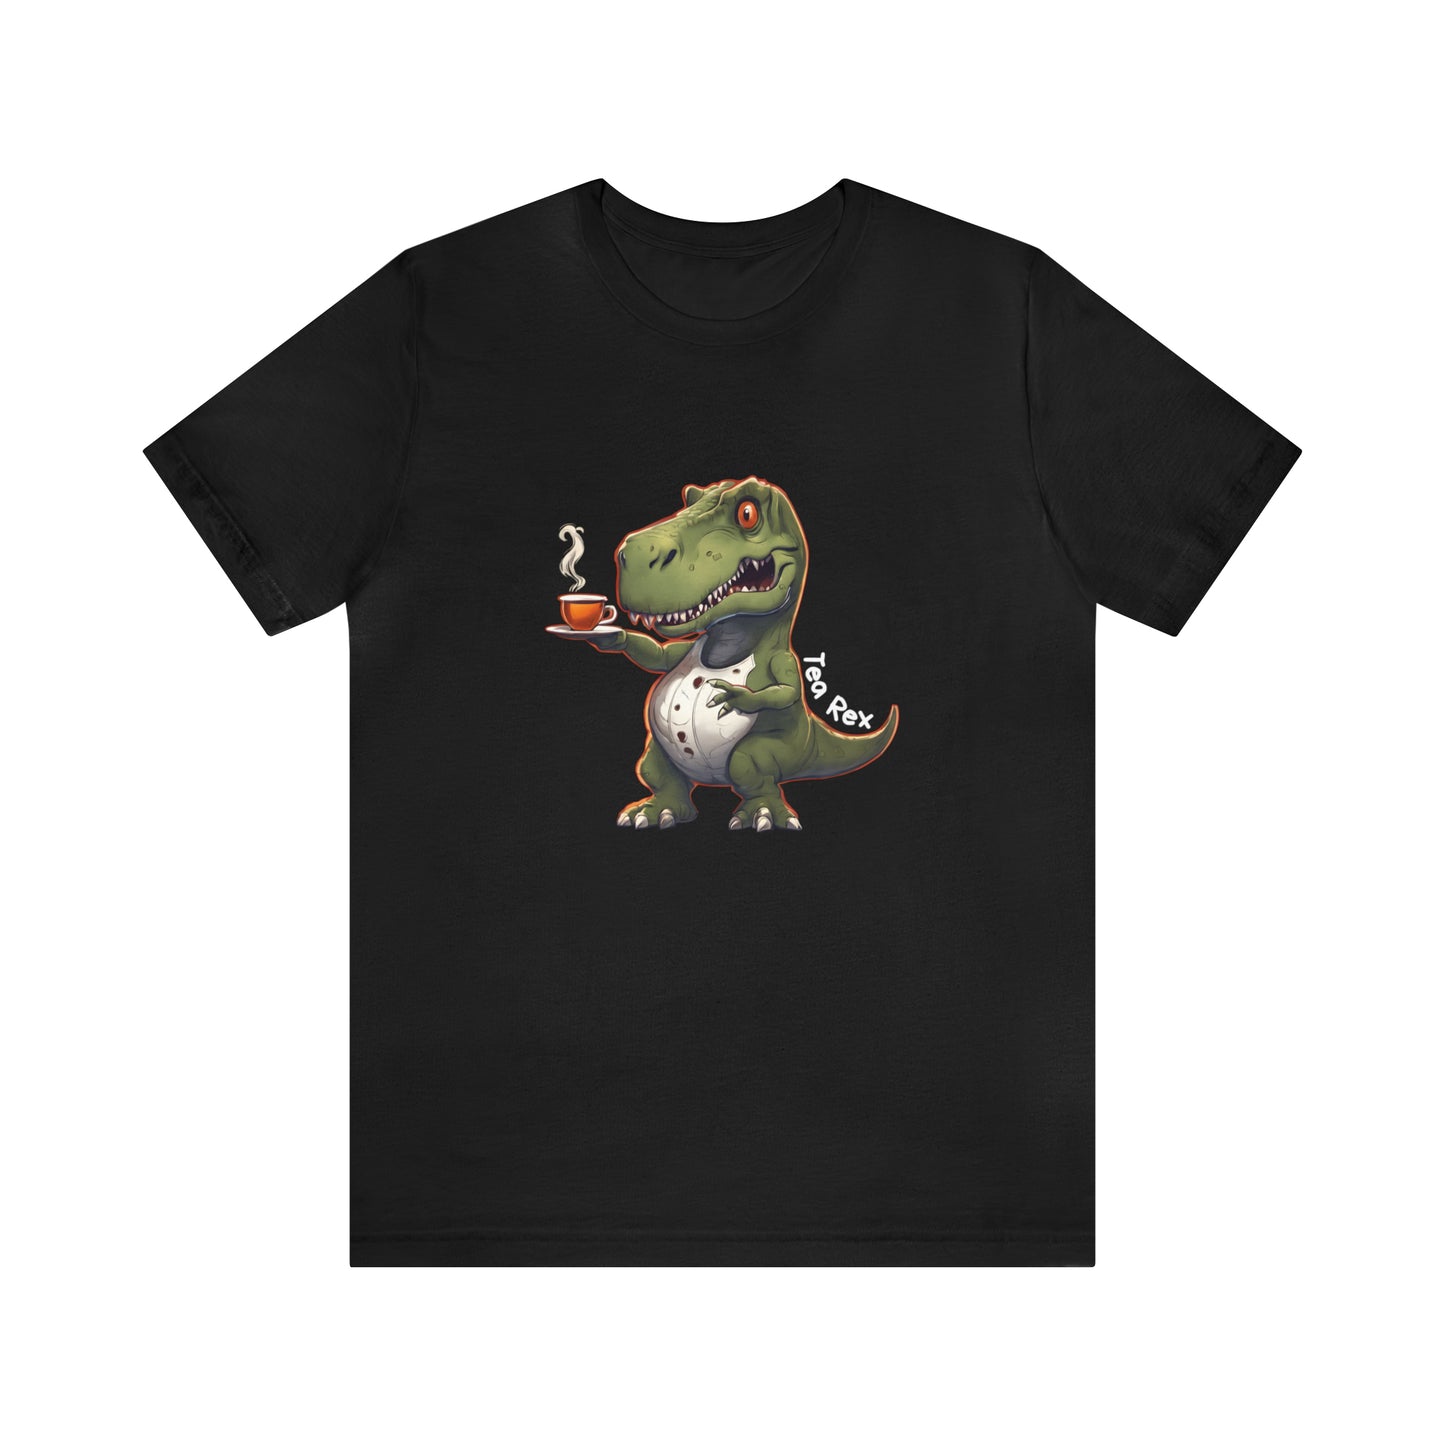 Tea Rex & T-rex dinosaur Unisex short sleeve T-Shirt with Ultra soft-cotton black